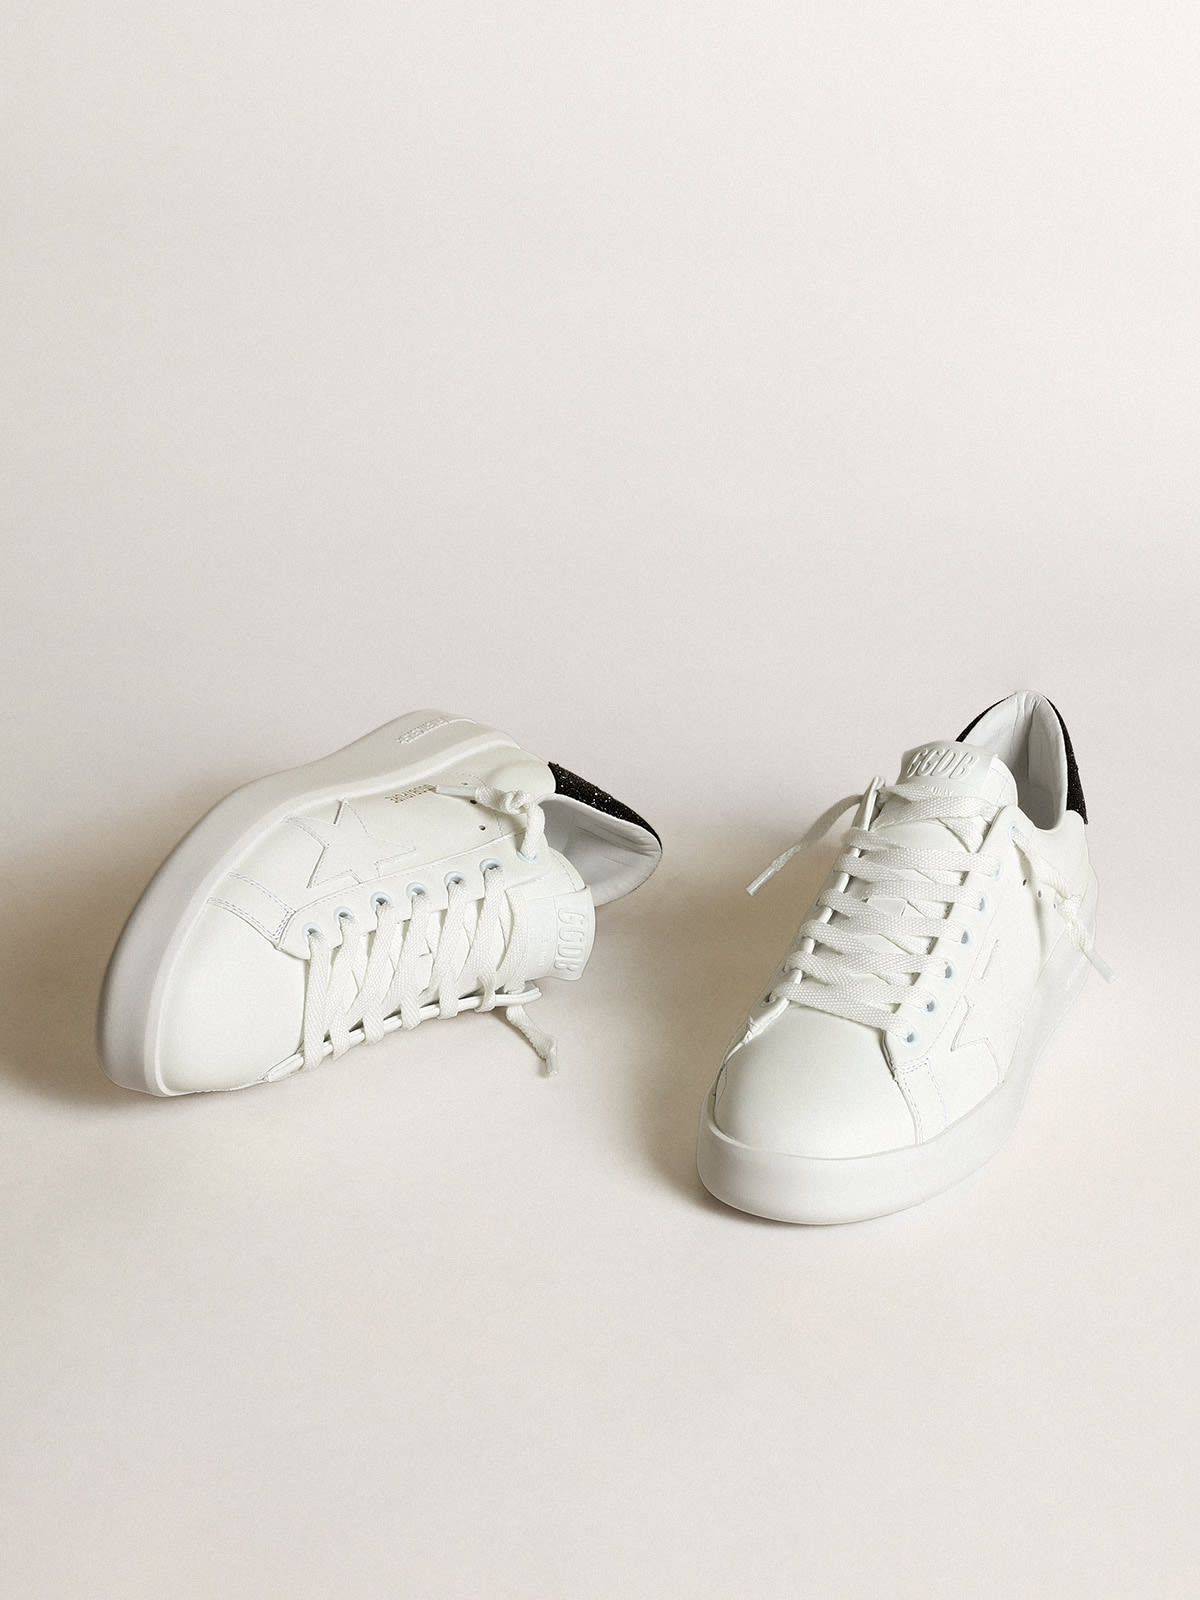 Golden Goose - Sneaker Purestar in pelle bianca con stella ton sur ton e talloncino in cristalli Swarovski neri in 